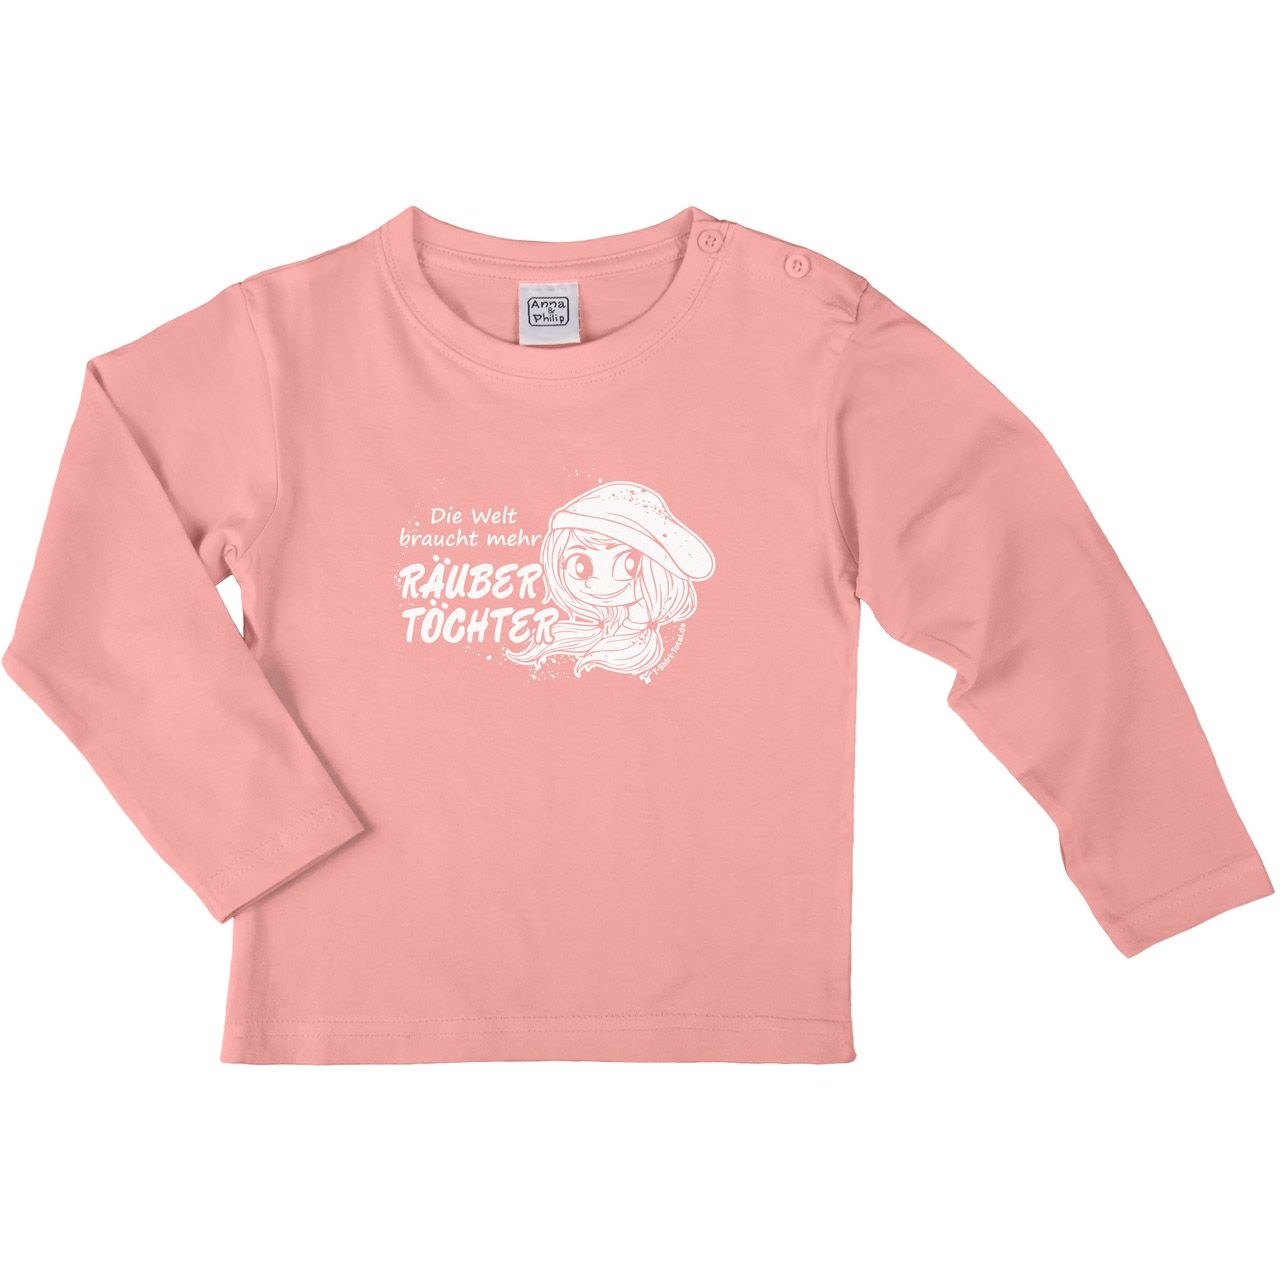 Räubertöchter Kinder Langarm Shirt rosa 104